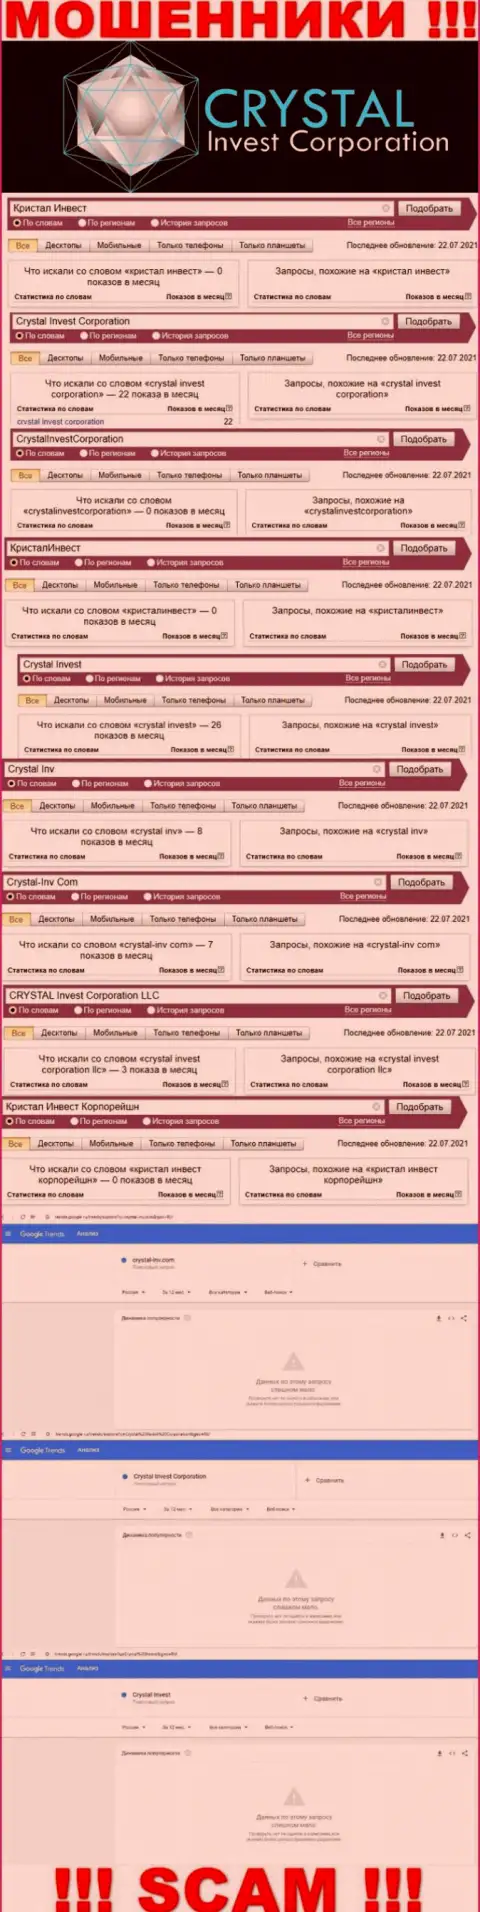 Инфа о числе online-запросов информации о шулерах КристалИнв